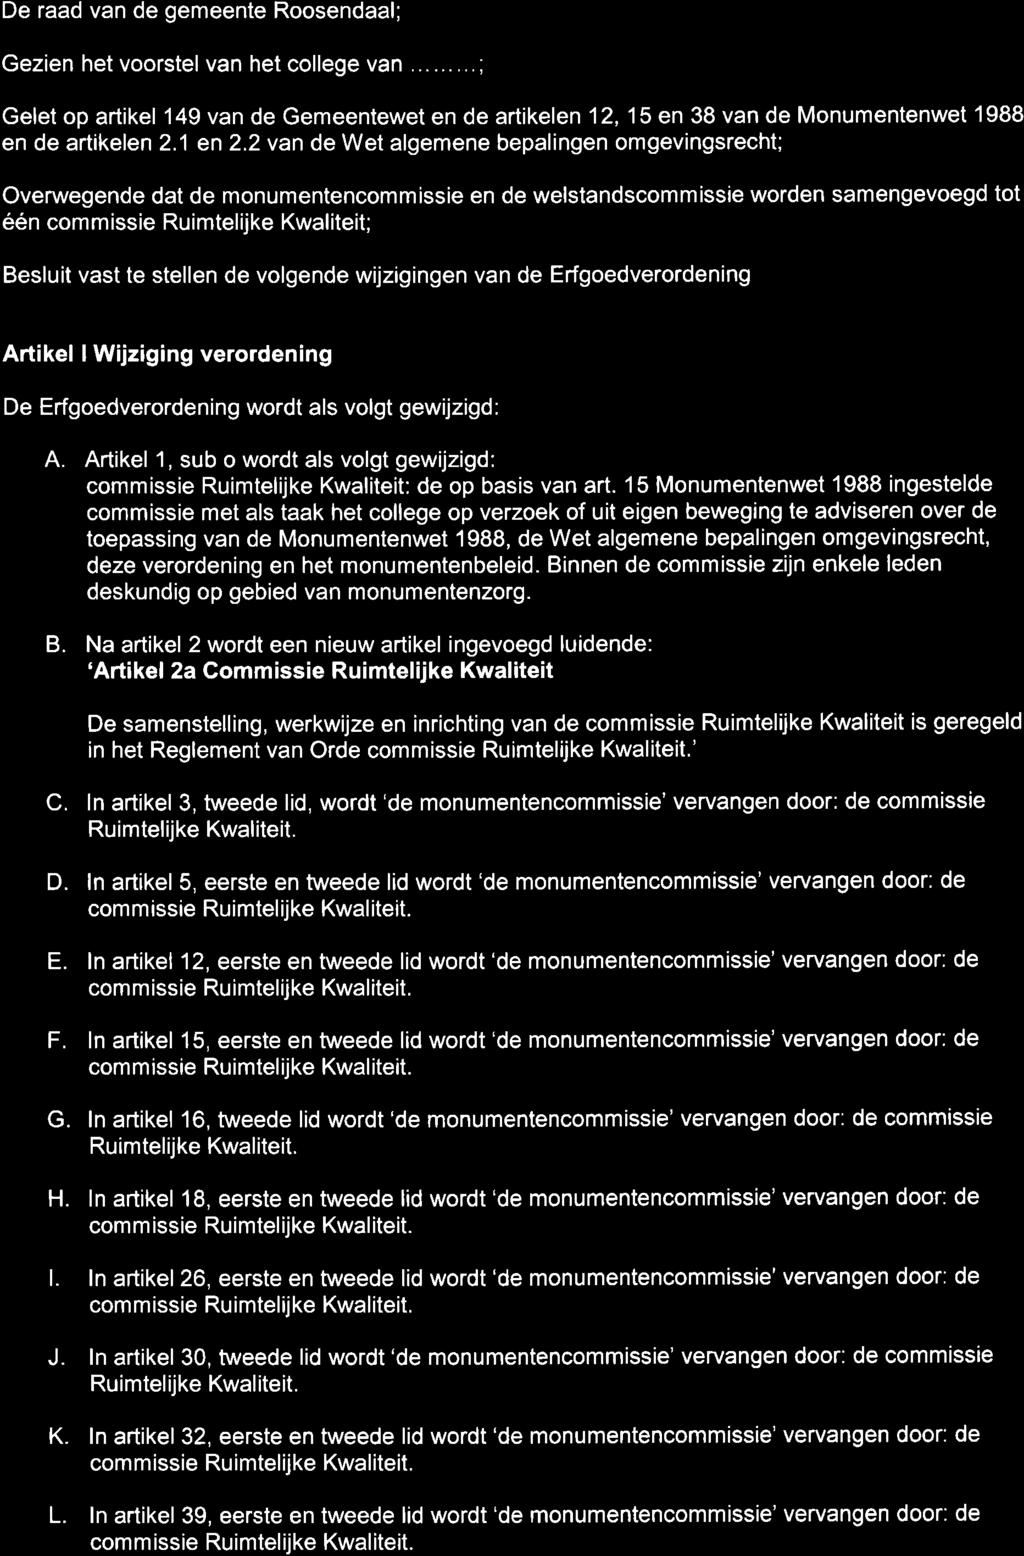 De raad van de gemeente Roosendaal; Gezien het voorstel van het college van......... ; Gelet op artikel 149 van de Gemeentewet en de artikelen 12,15 en 38 van de Monumentenwet 1988 en de artikelen 2.